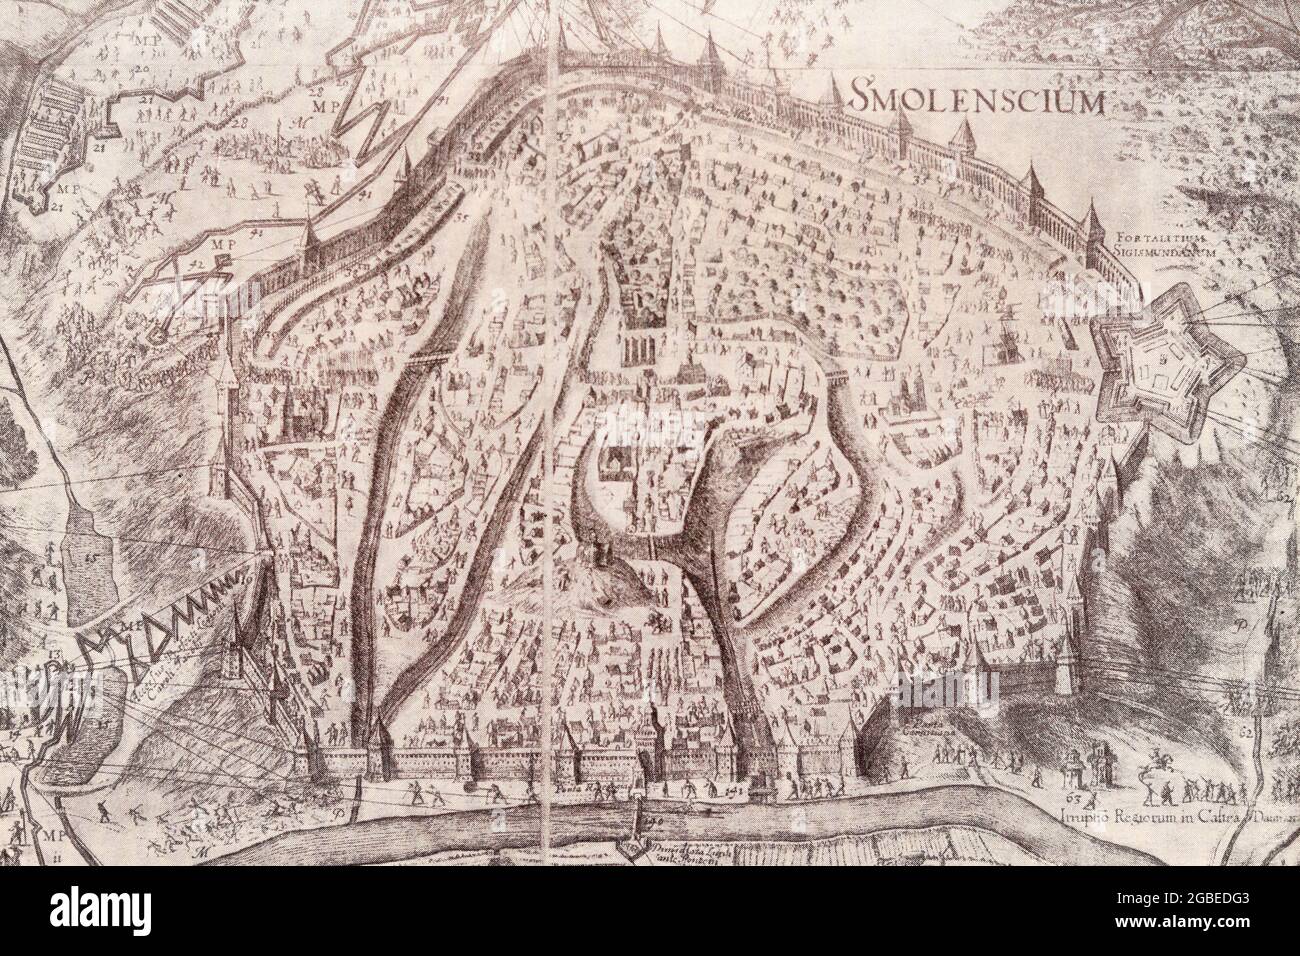 Belagerungszug von Smolensk durch russische Truppen in den Jahren 1632-1634. Gravur von 1636. Stockfoto